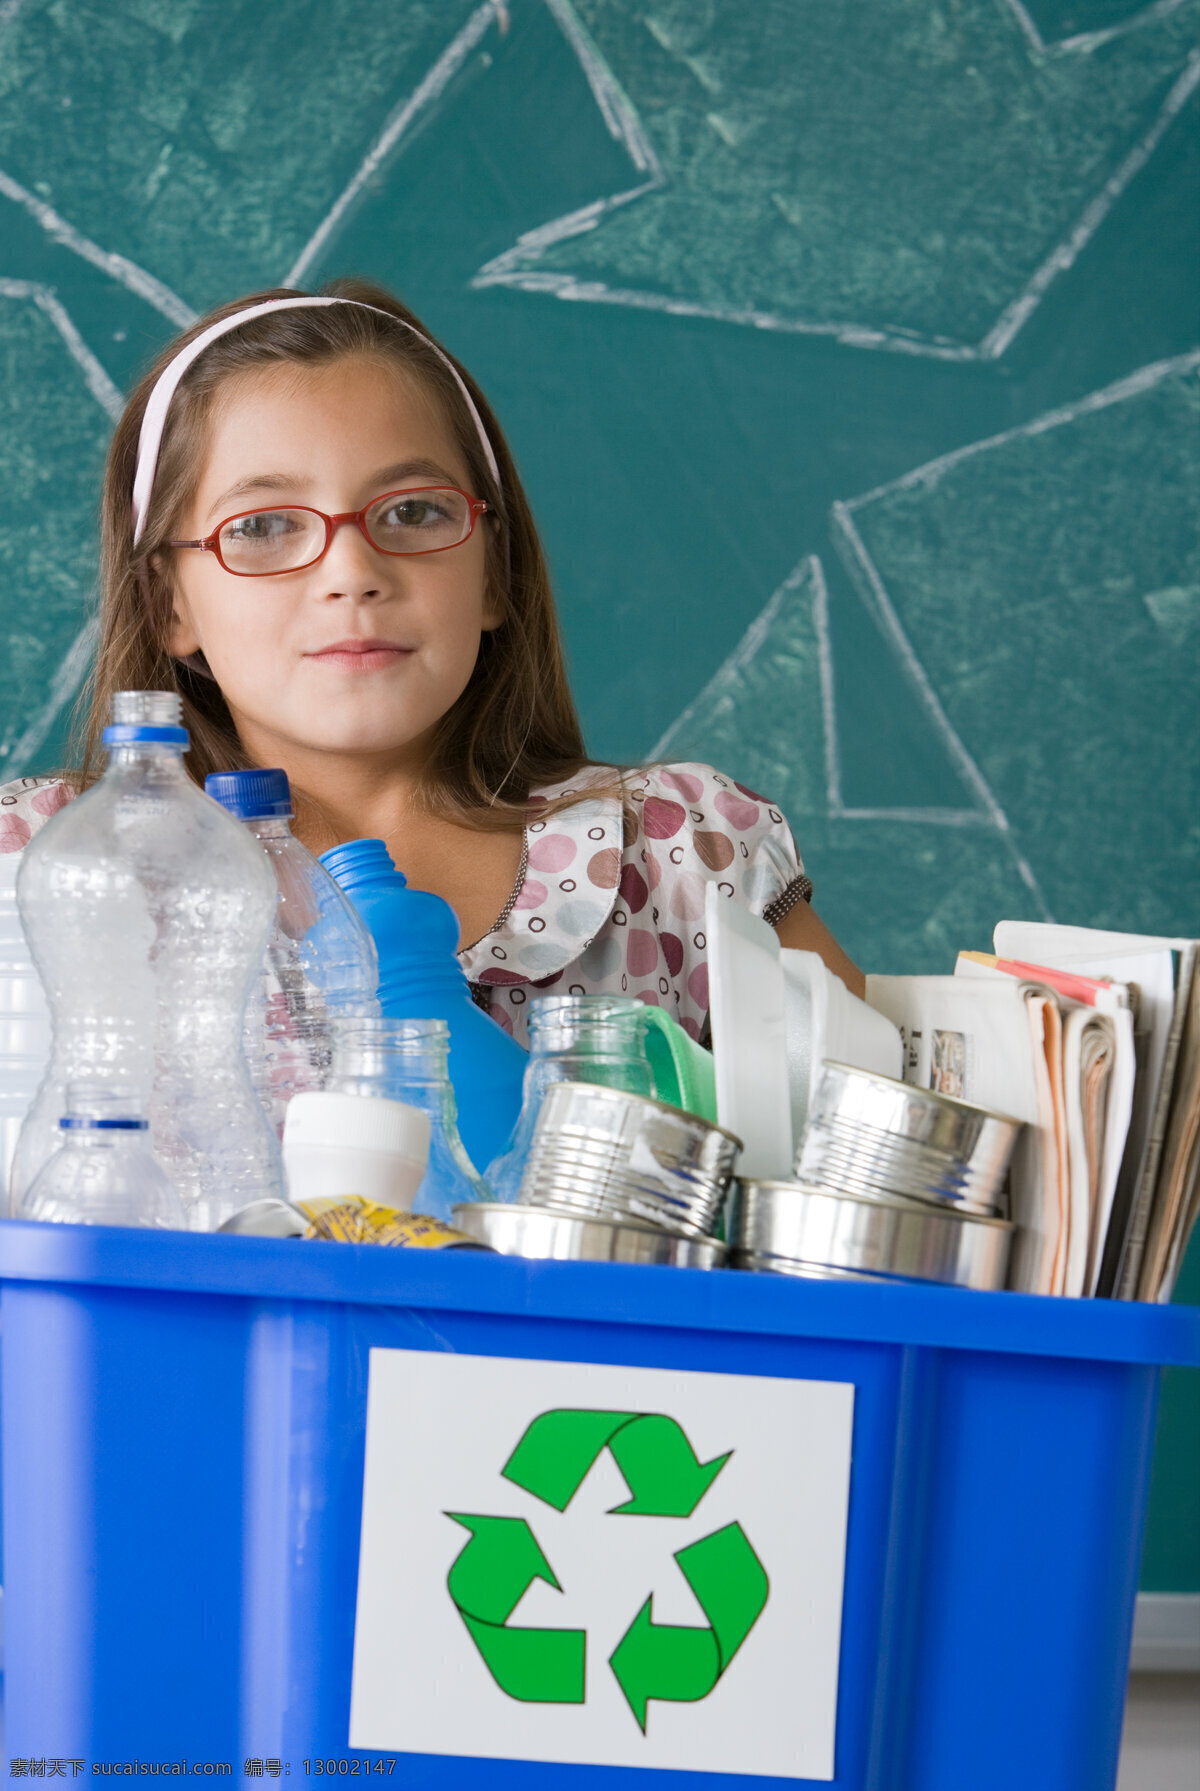 回收 桶 女孩 回收桶和女孩 孩子 儿童 人物摄影 废旧物品 回收桶 环保 儿童图片 人物图片